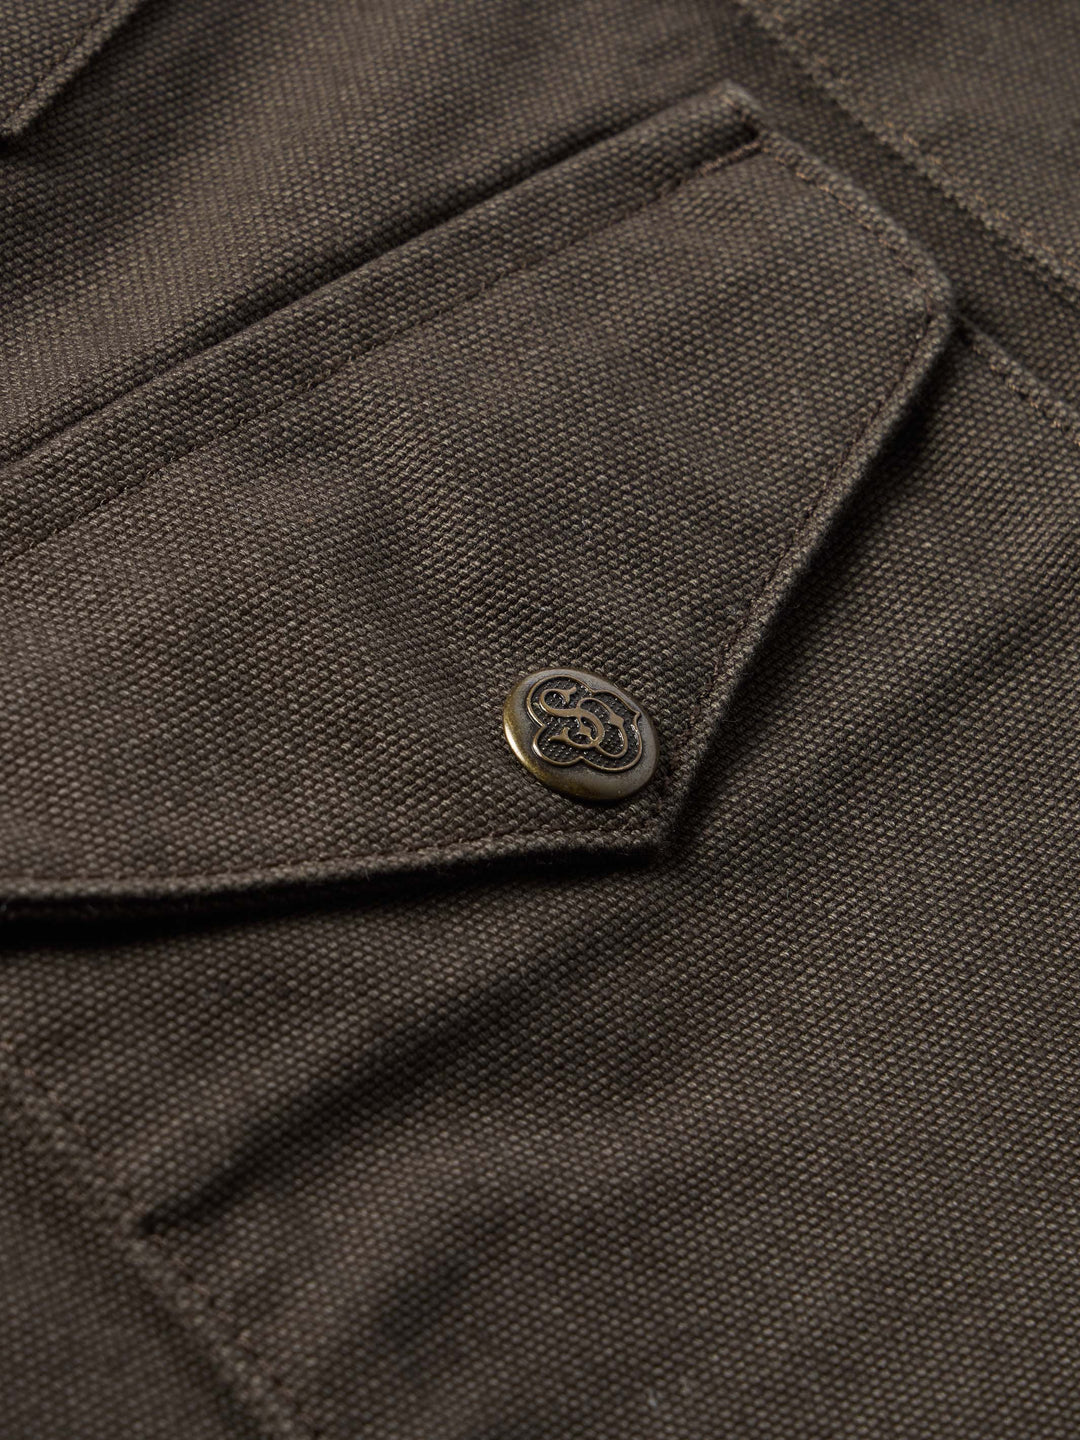 Zip Canvas Jacket - Schaefer Outfitter